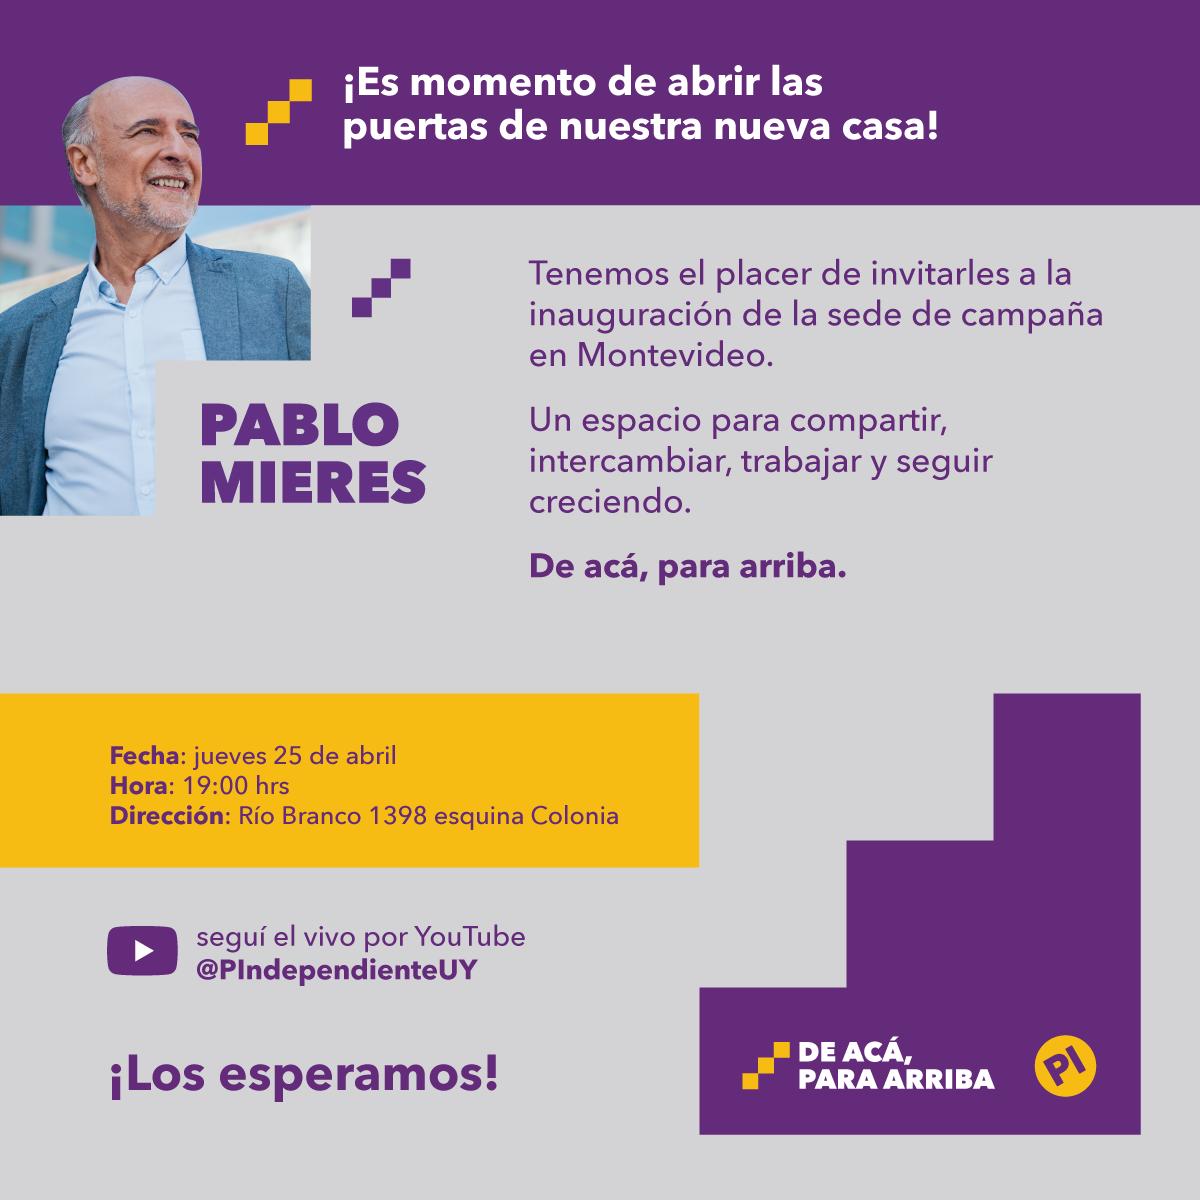 📢De acá, para arriba. Inauguramos la nueva sede de campaña del Partido Independiente en Montevideo. 🗓️Jueves 25 de abril, 19:00 horas. ¡Los esperamos!